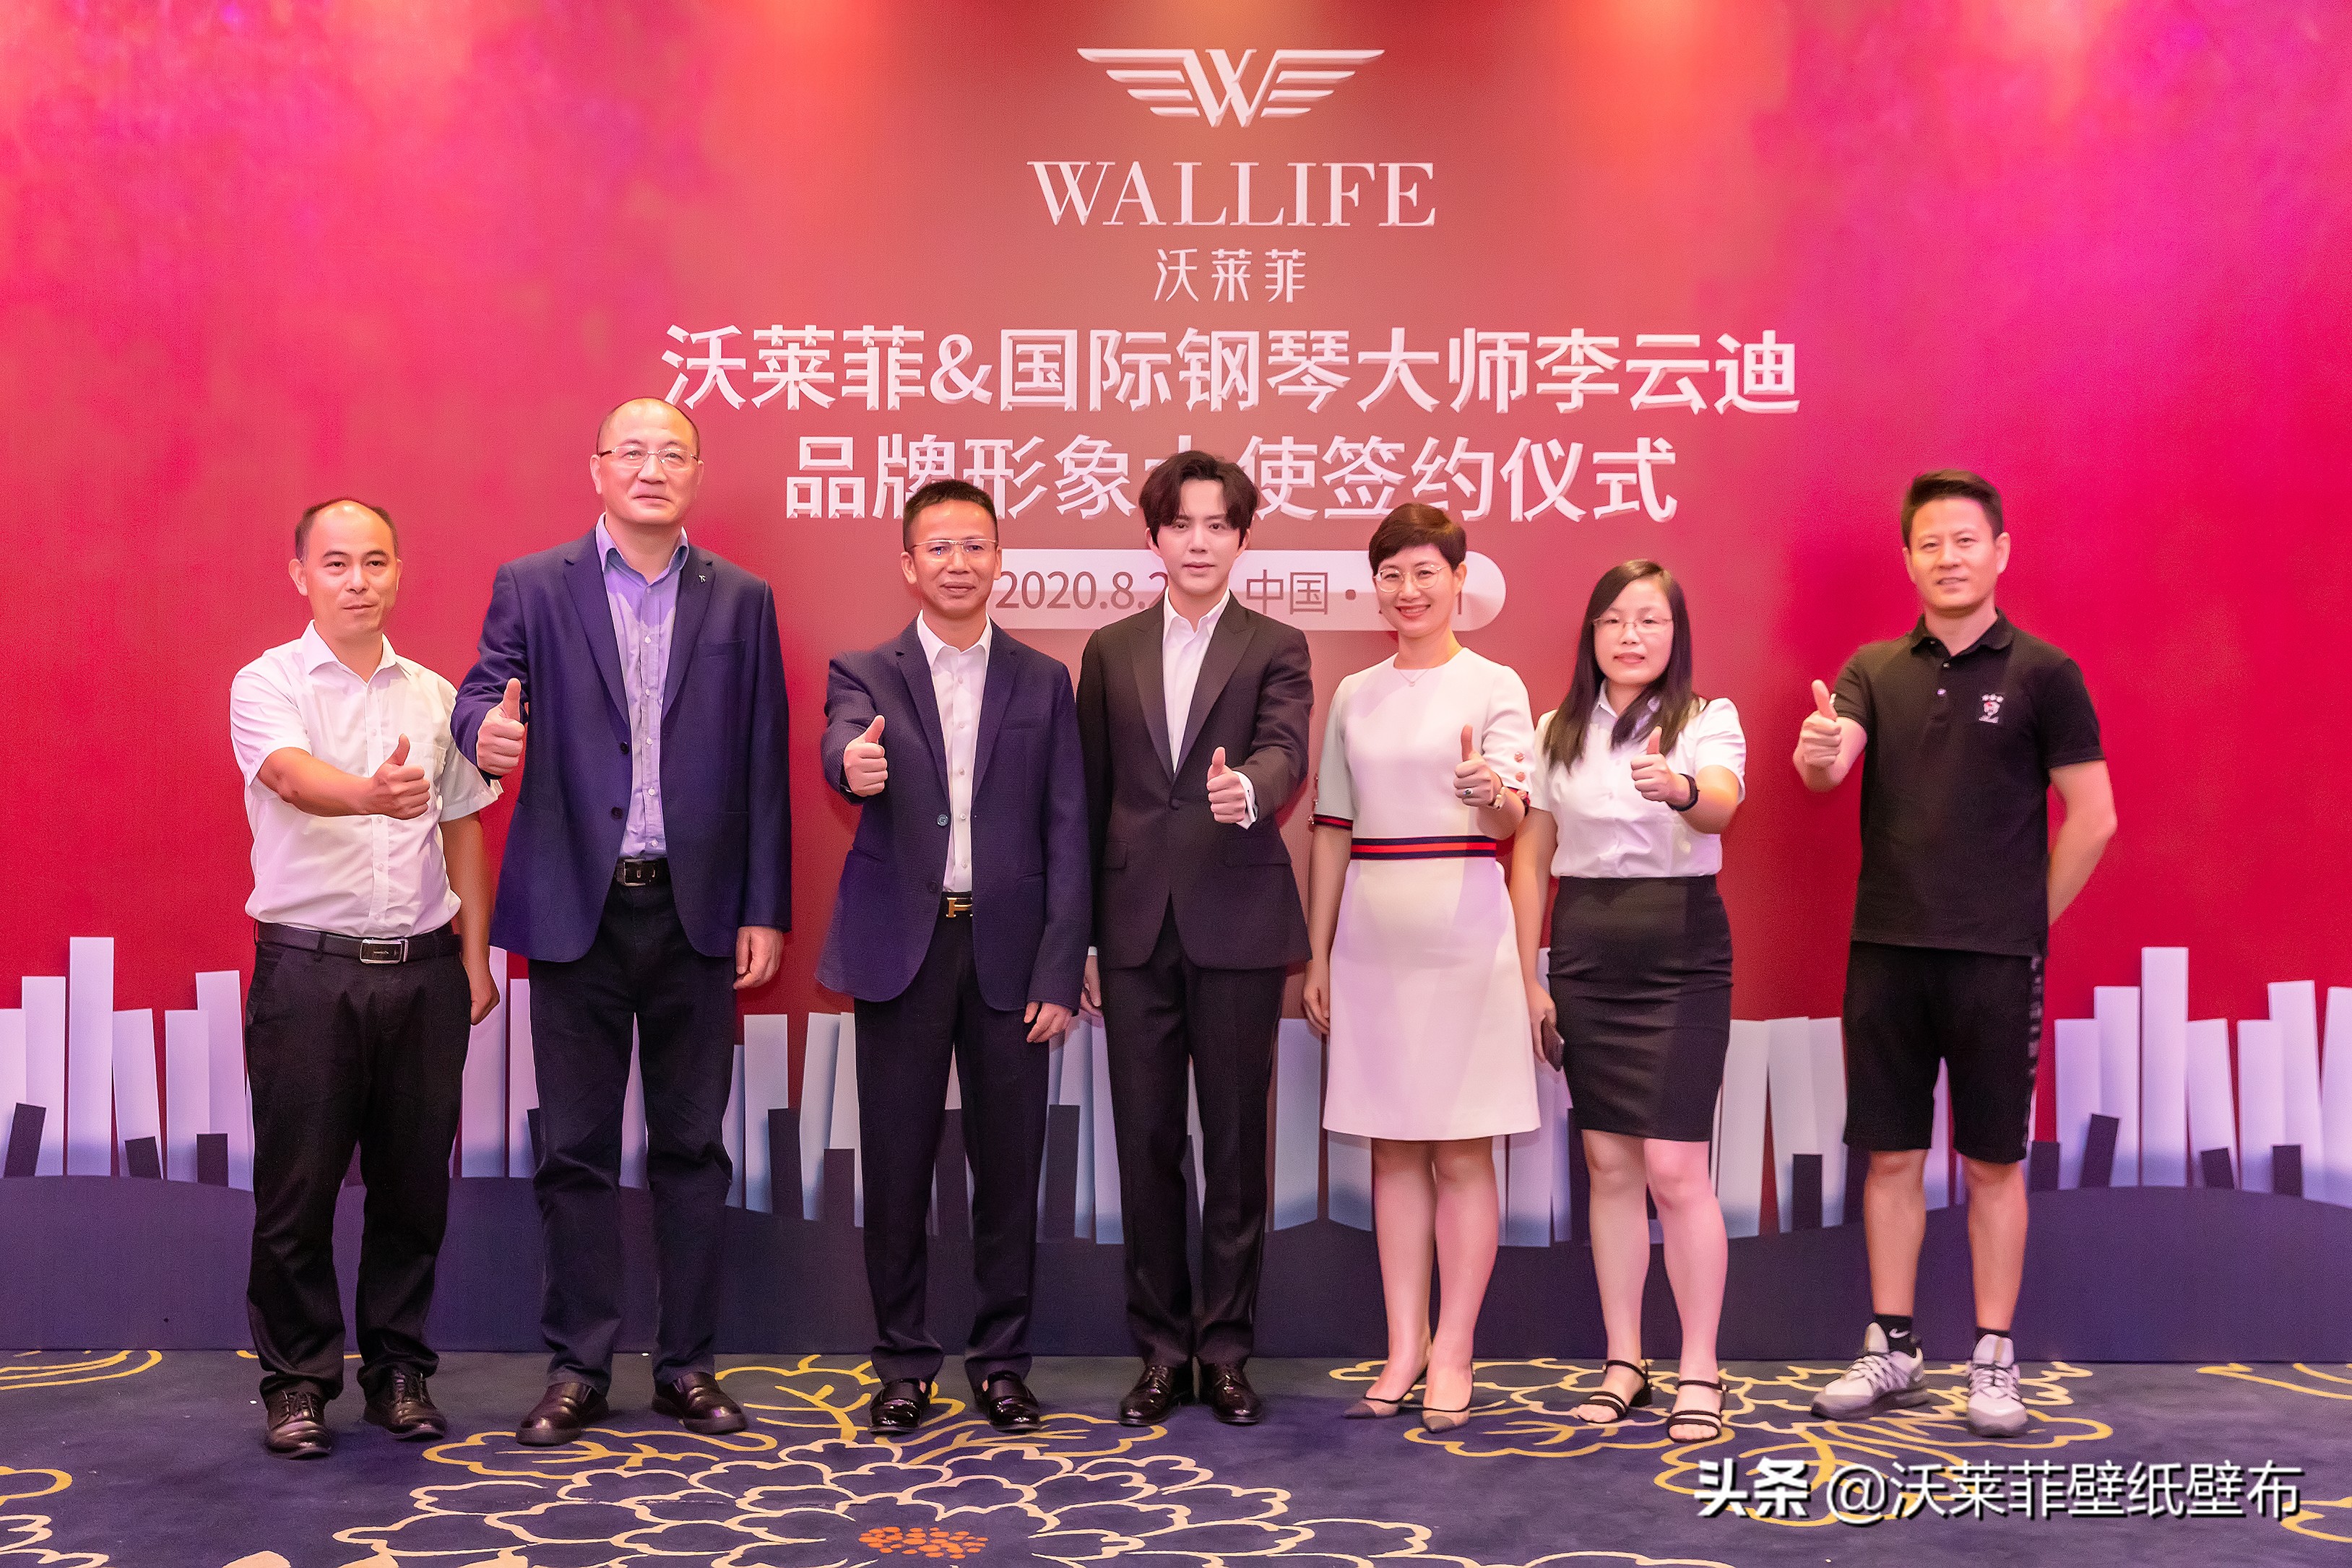 官宣十大品牌沃莱菲墙布窗帘品牌代言人国际钢琴大师李云迪